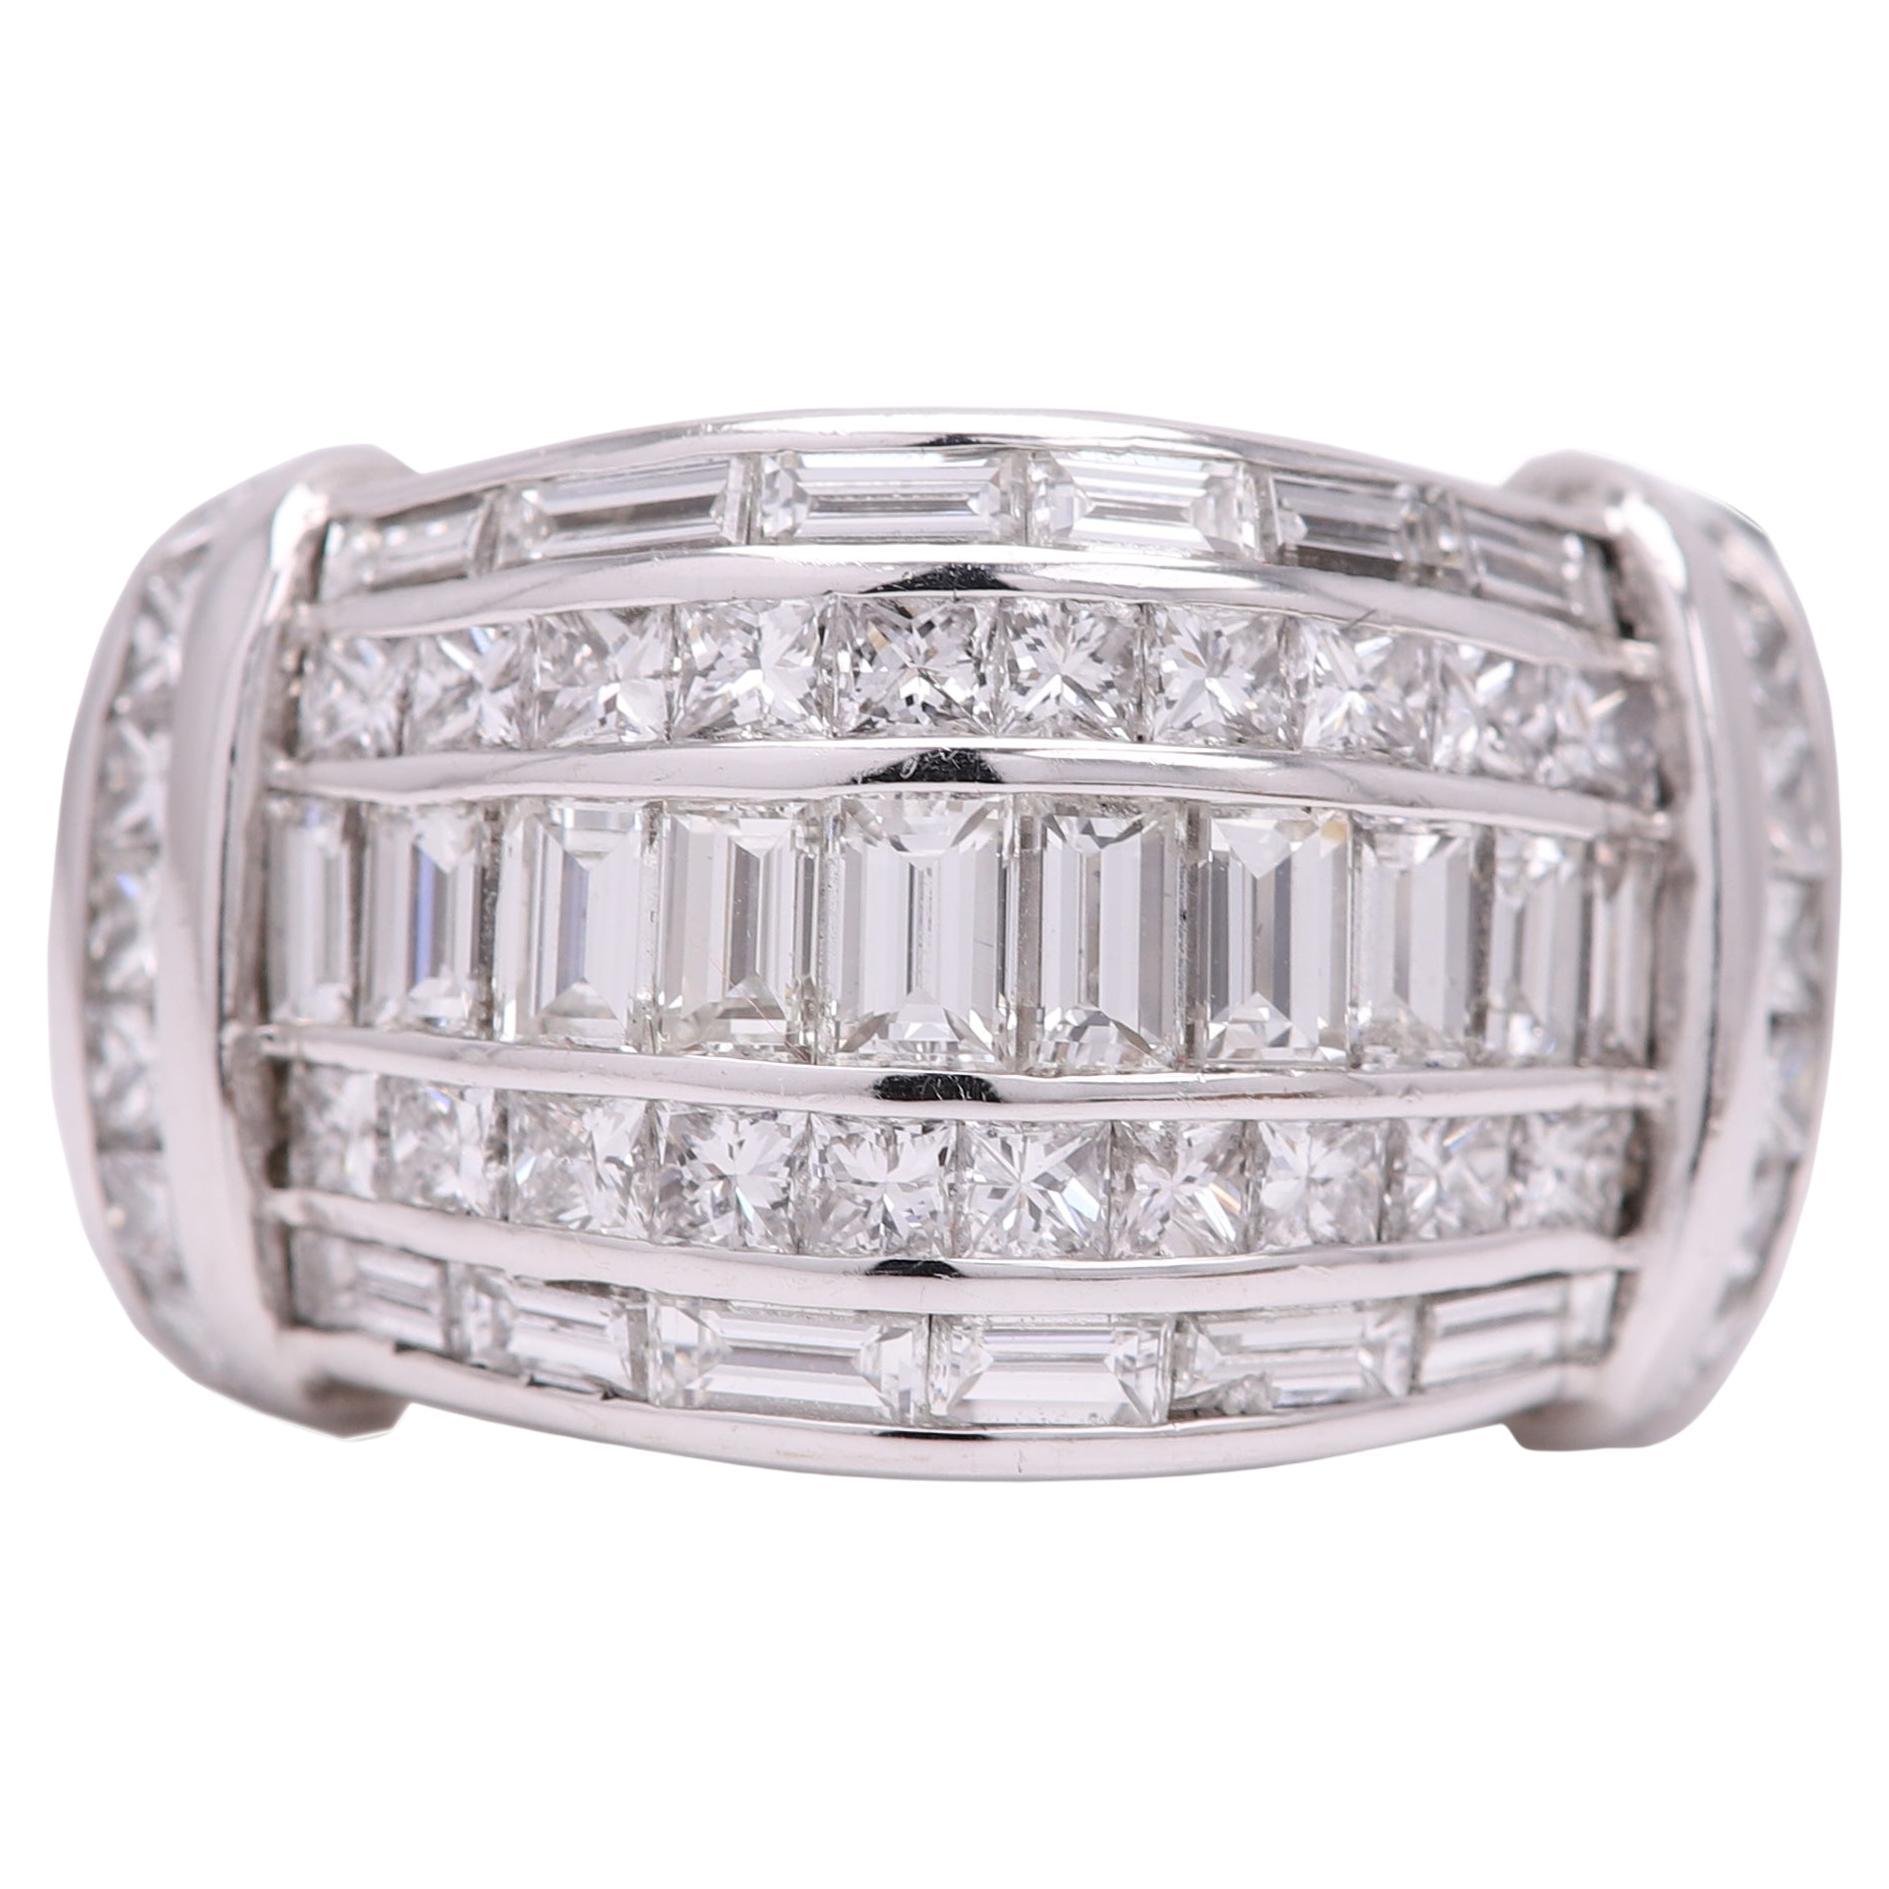 Cluster-Baguette-Ring
sehr beeindruckend und aussagekräftig
Diamanten insgesamt 3,37 Karat  F-G -VVSI - VVS2
14k Weißgold 14,2 Gramm
Fingergröße 6,75
das Ringdesign ist an der breitesten Stelle ca. 14 mm und an der schmalsten Stelle ca. 10 mm